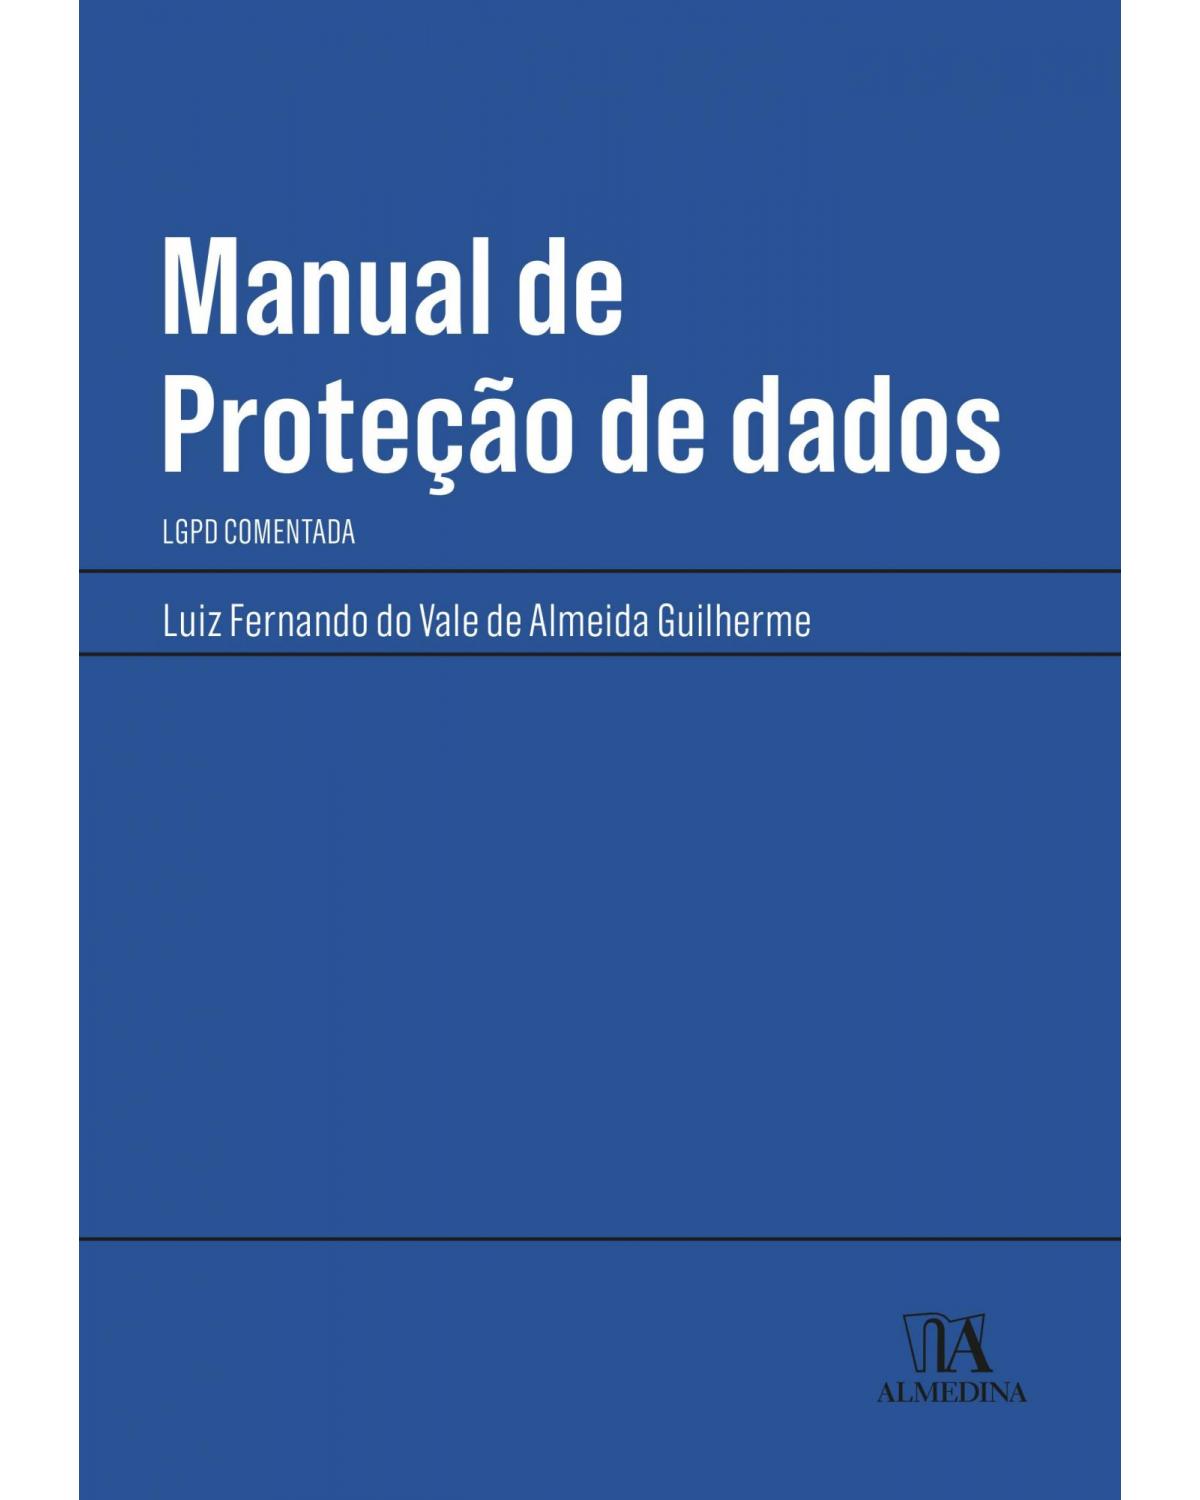 Manual de proteção de dados - LGPD comentada - 1ª Edição | 2021